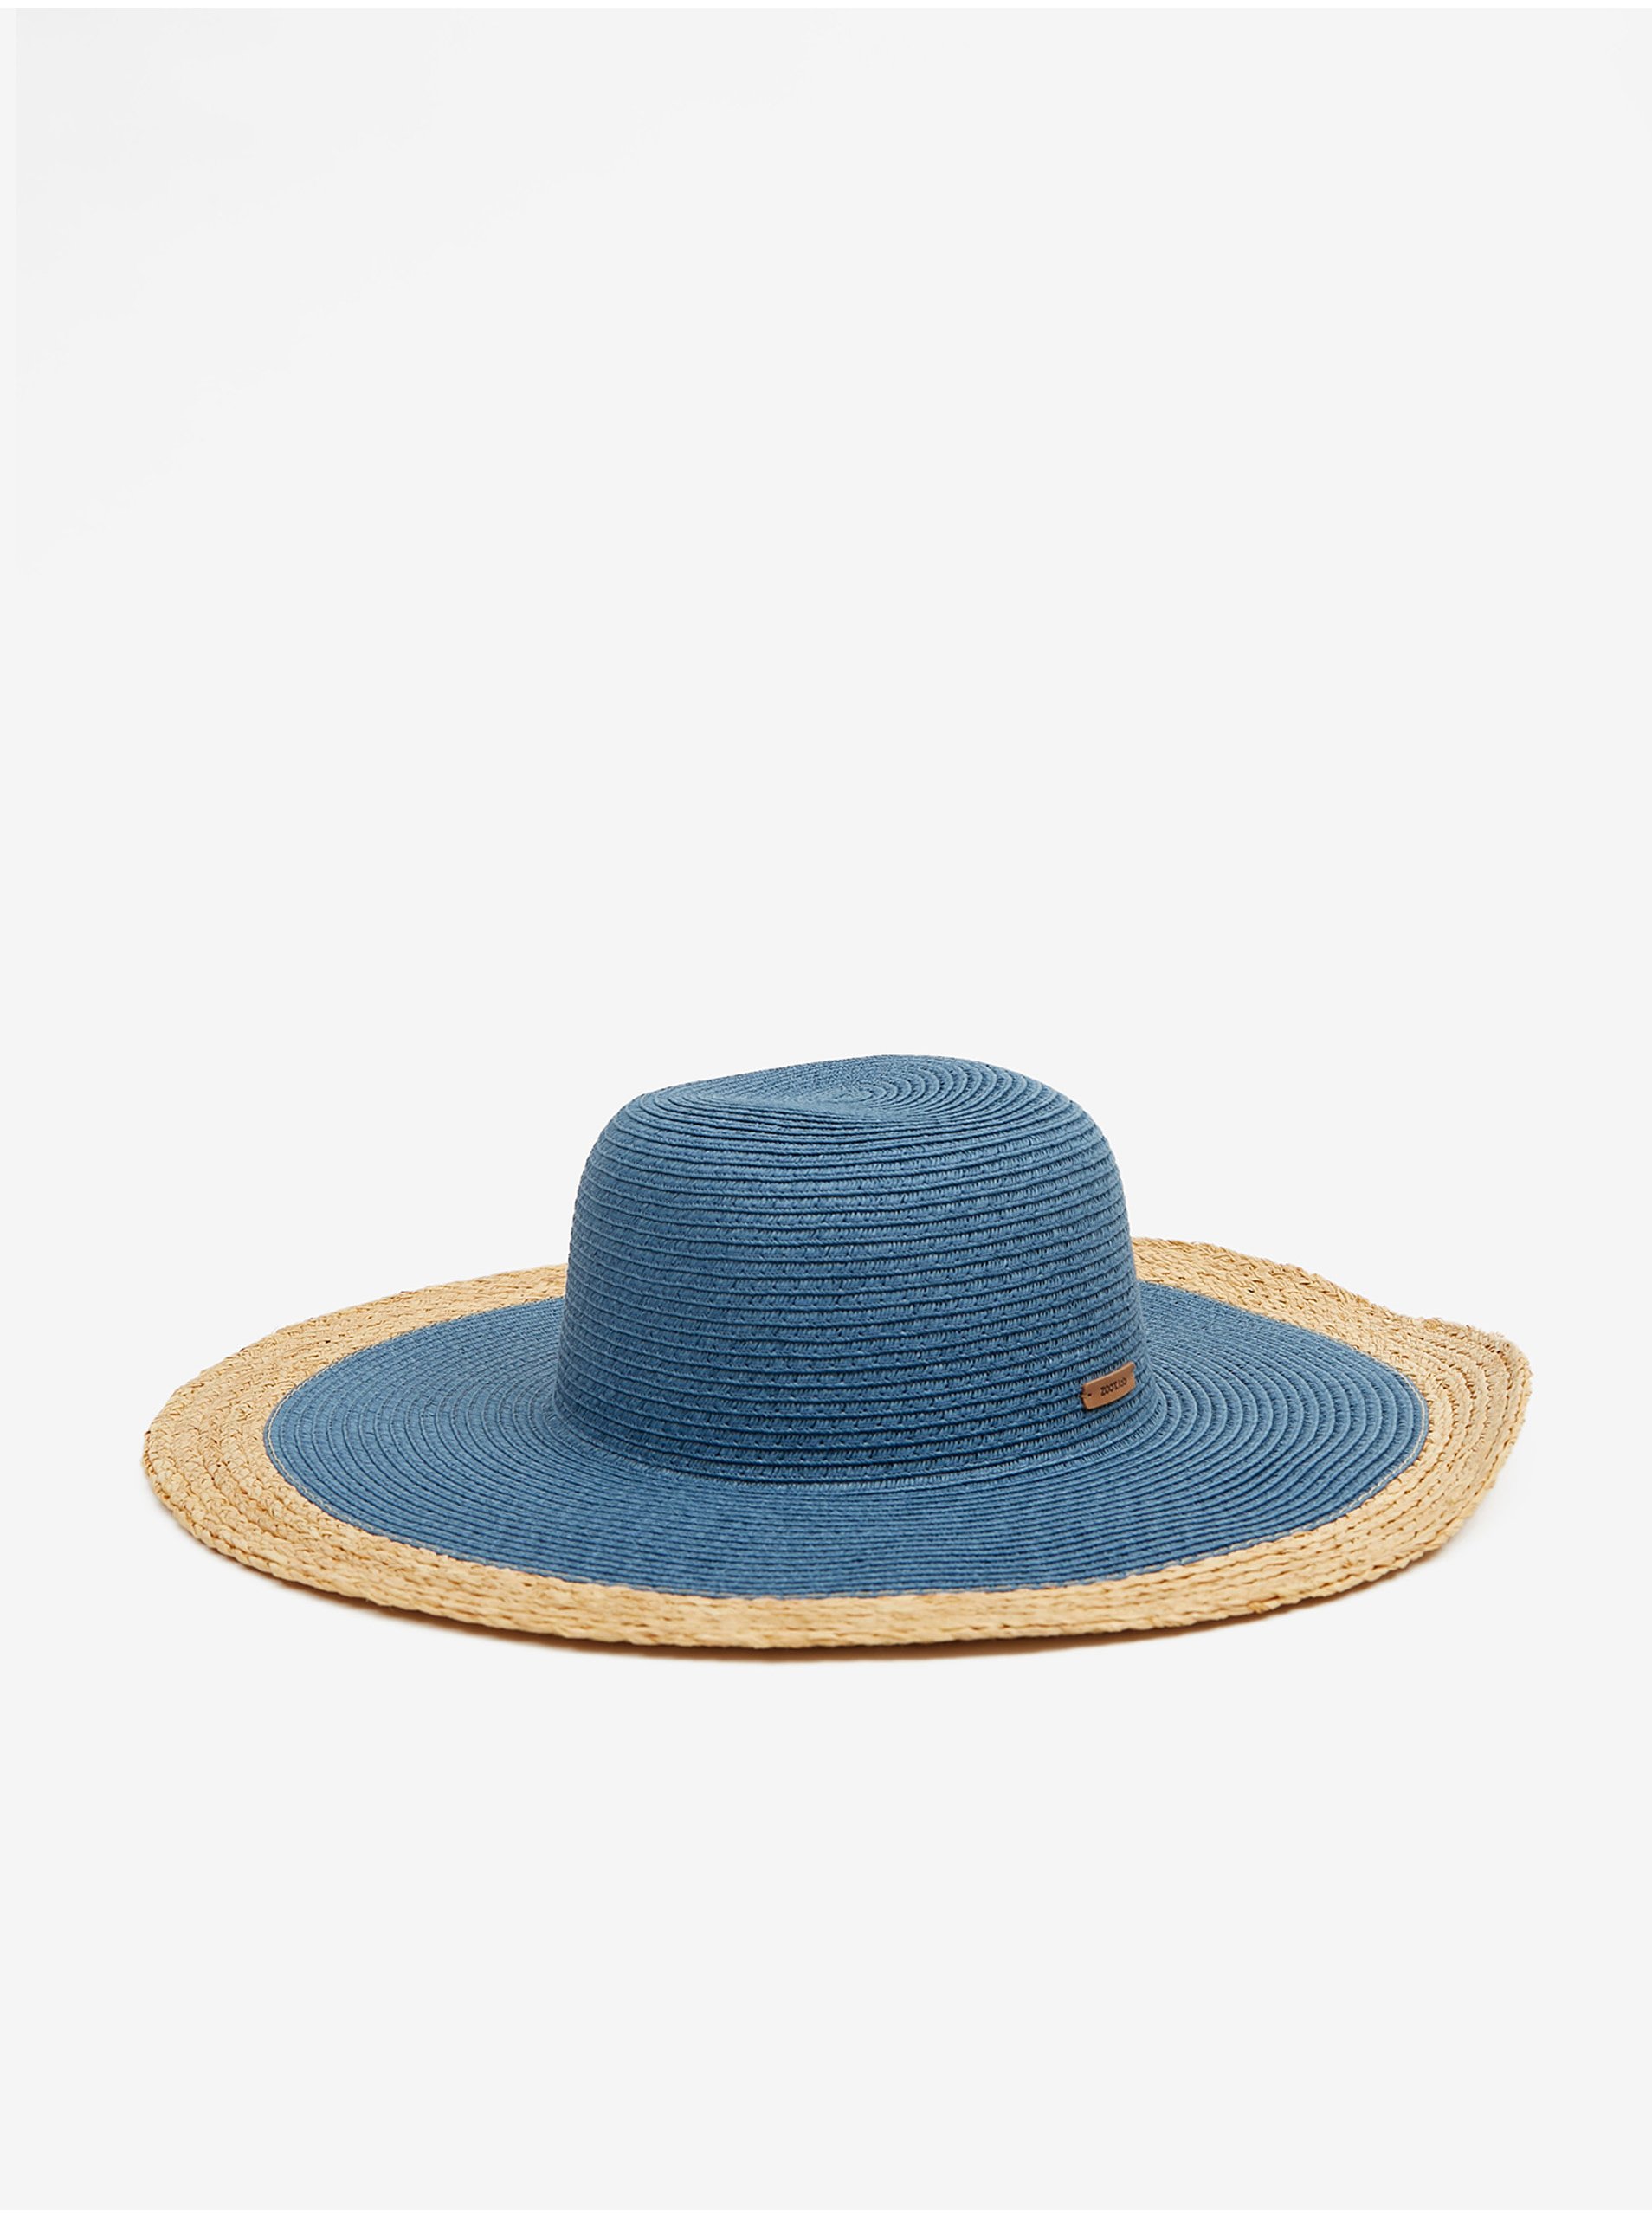 Levně Hnědo-modrý dámský slaměný klobouk ZOOT.lab Lysbet